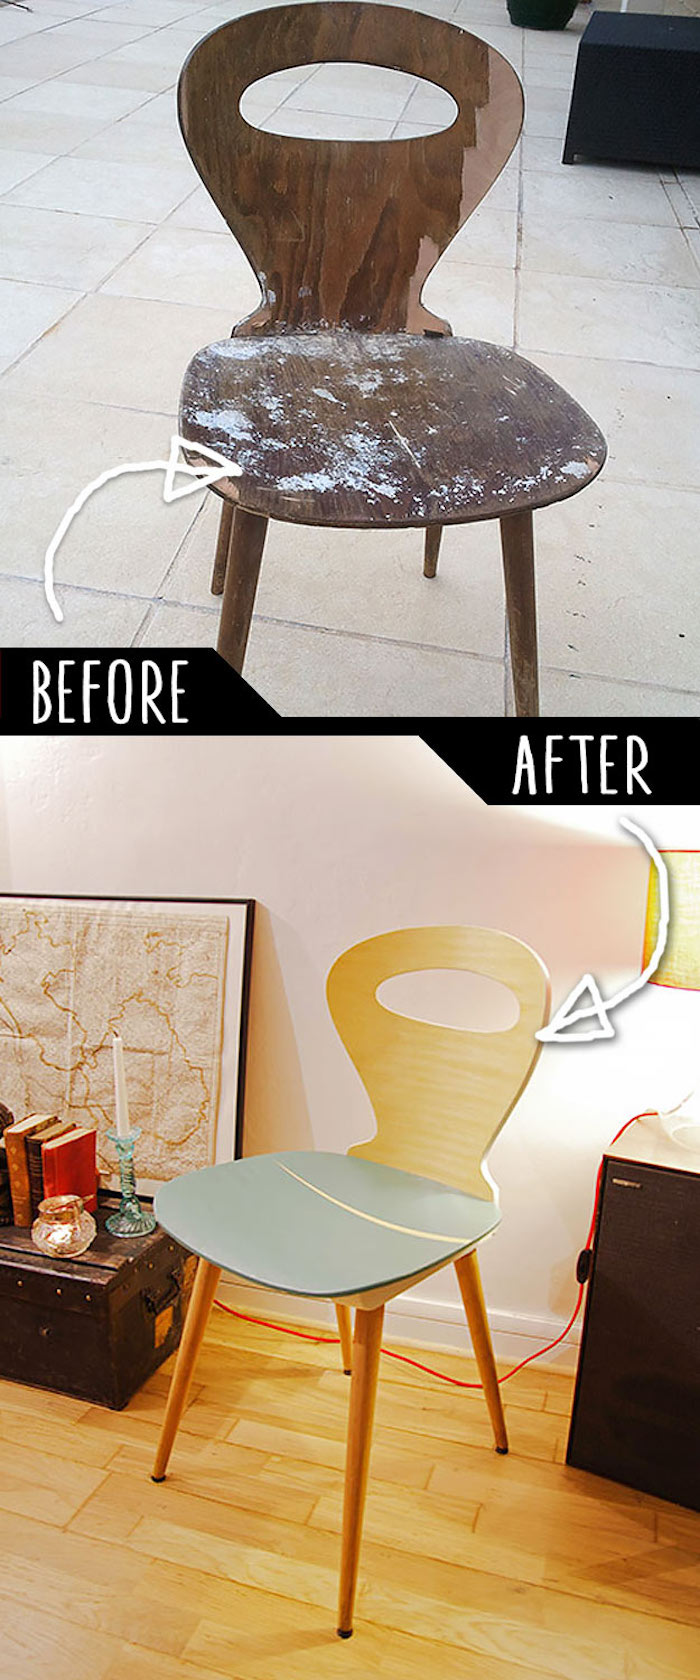 Vieux chaise transformé en cool chaise, photo avant et après, relooking meuble, quelle peinture pour repeindre un meuble en bois